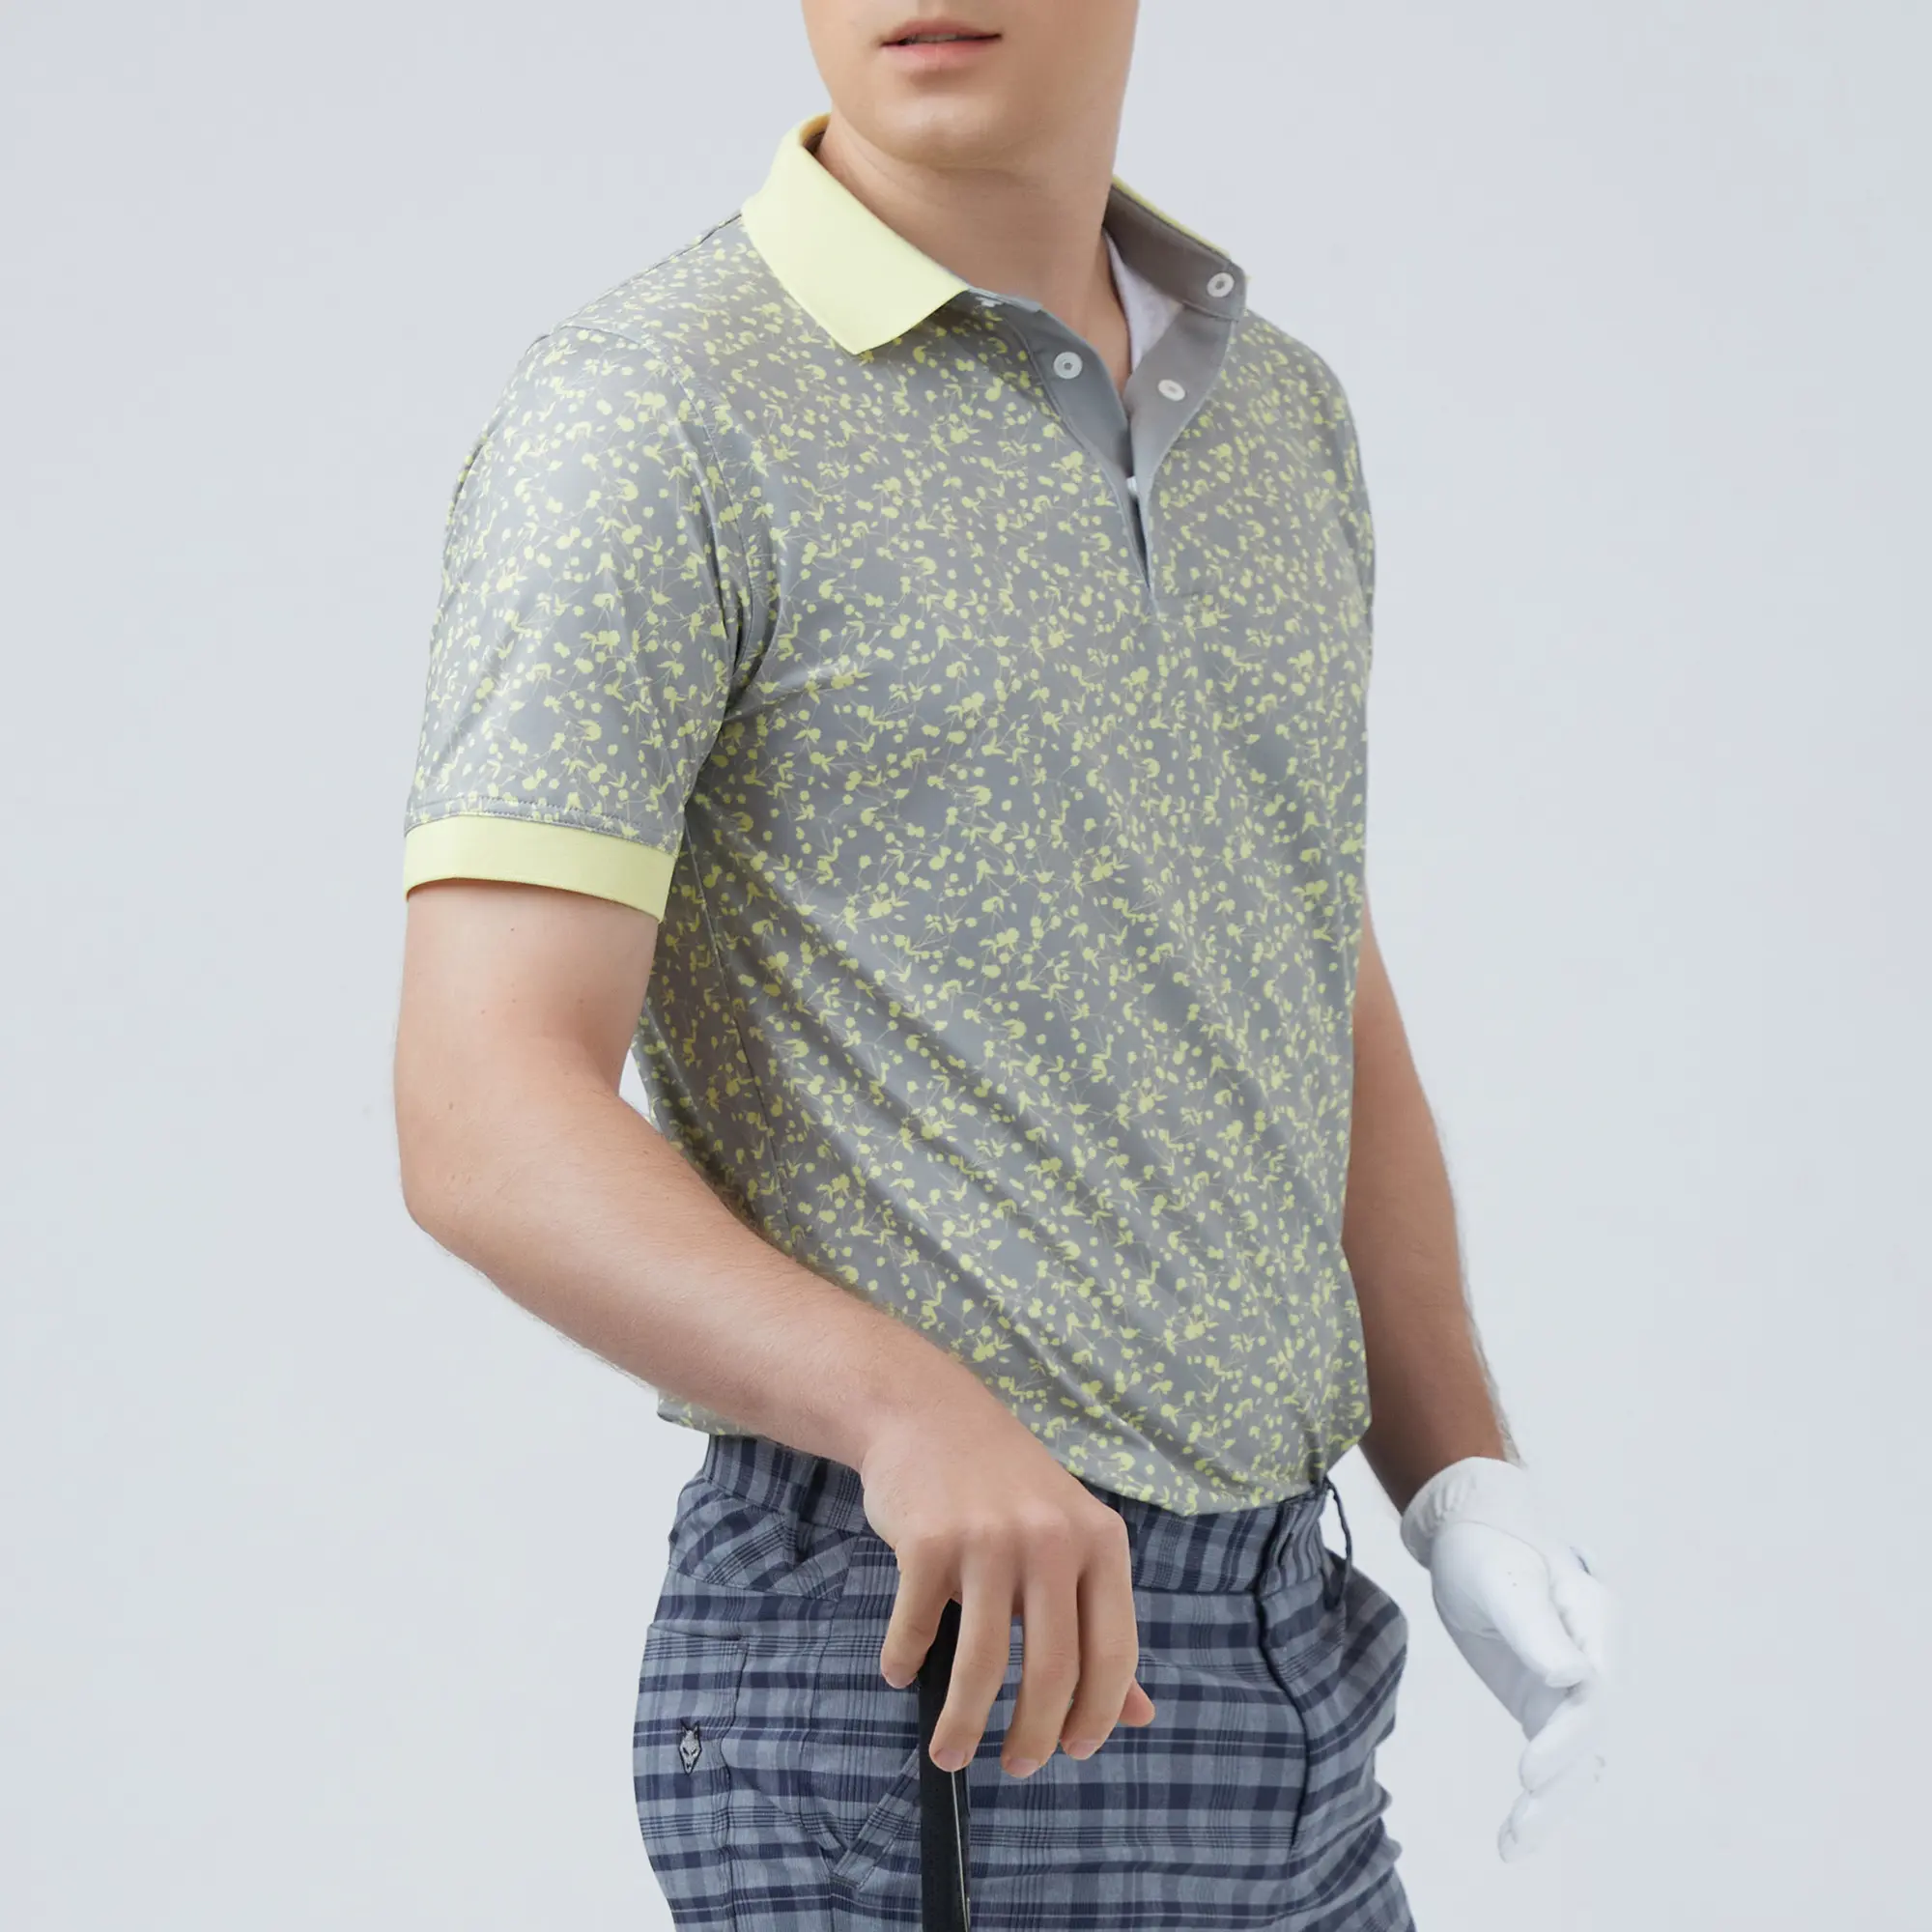 पुरुषों की गोल्फ पोलो शर्ट पॉलिएस्टर स्पैन्डेक्स अच्छे रंग प्रतिधारण के साथ, वियतनाम से उचित गुणवत्ता वाली त्वरित सुखाने वाली सुविधाएं